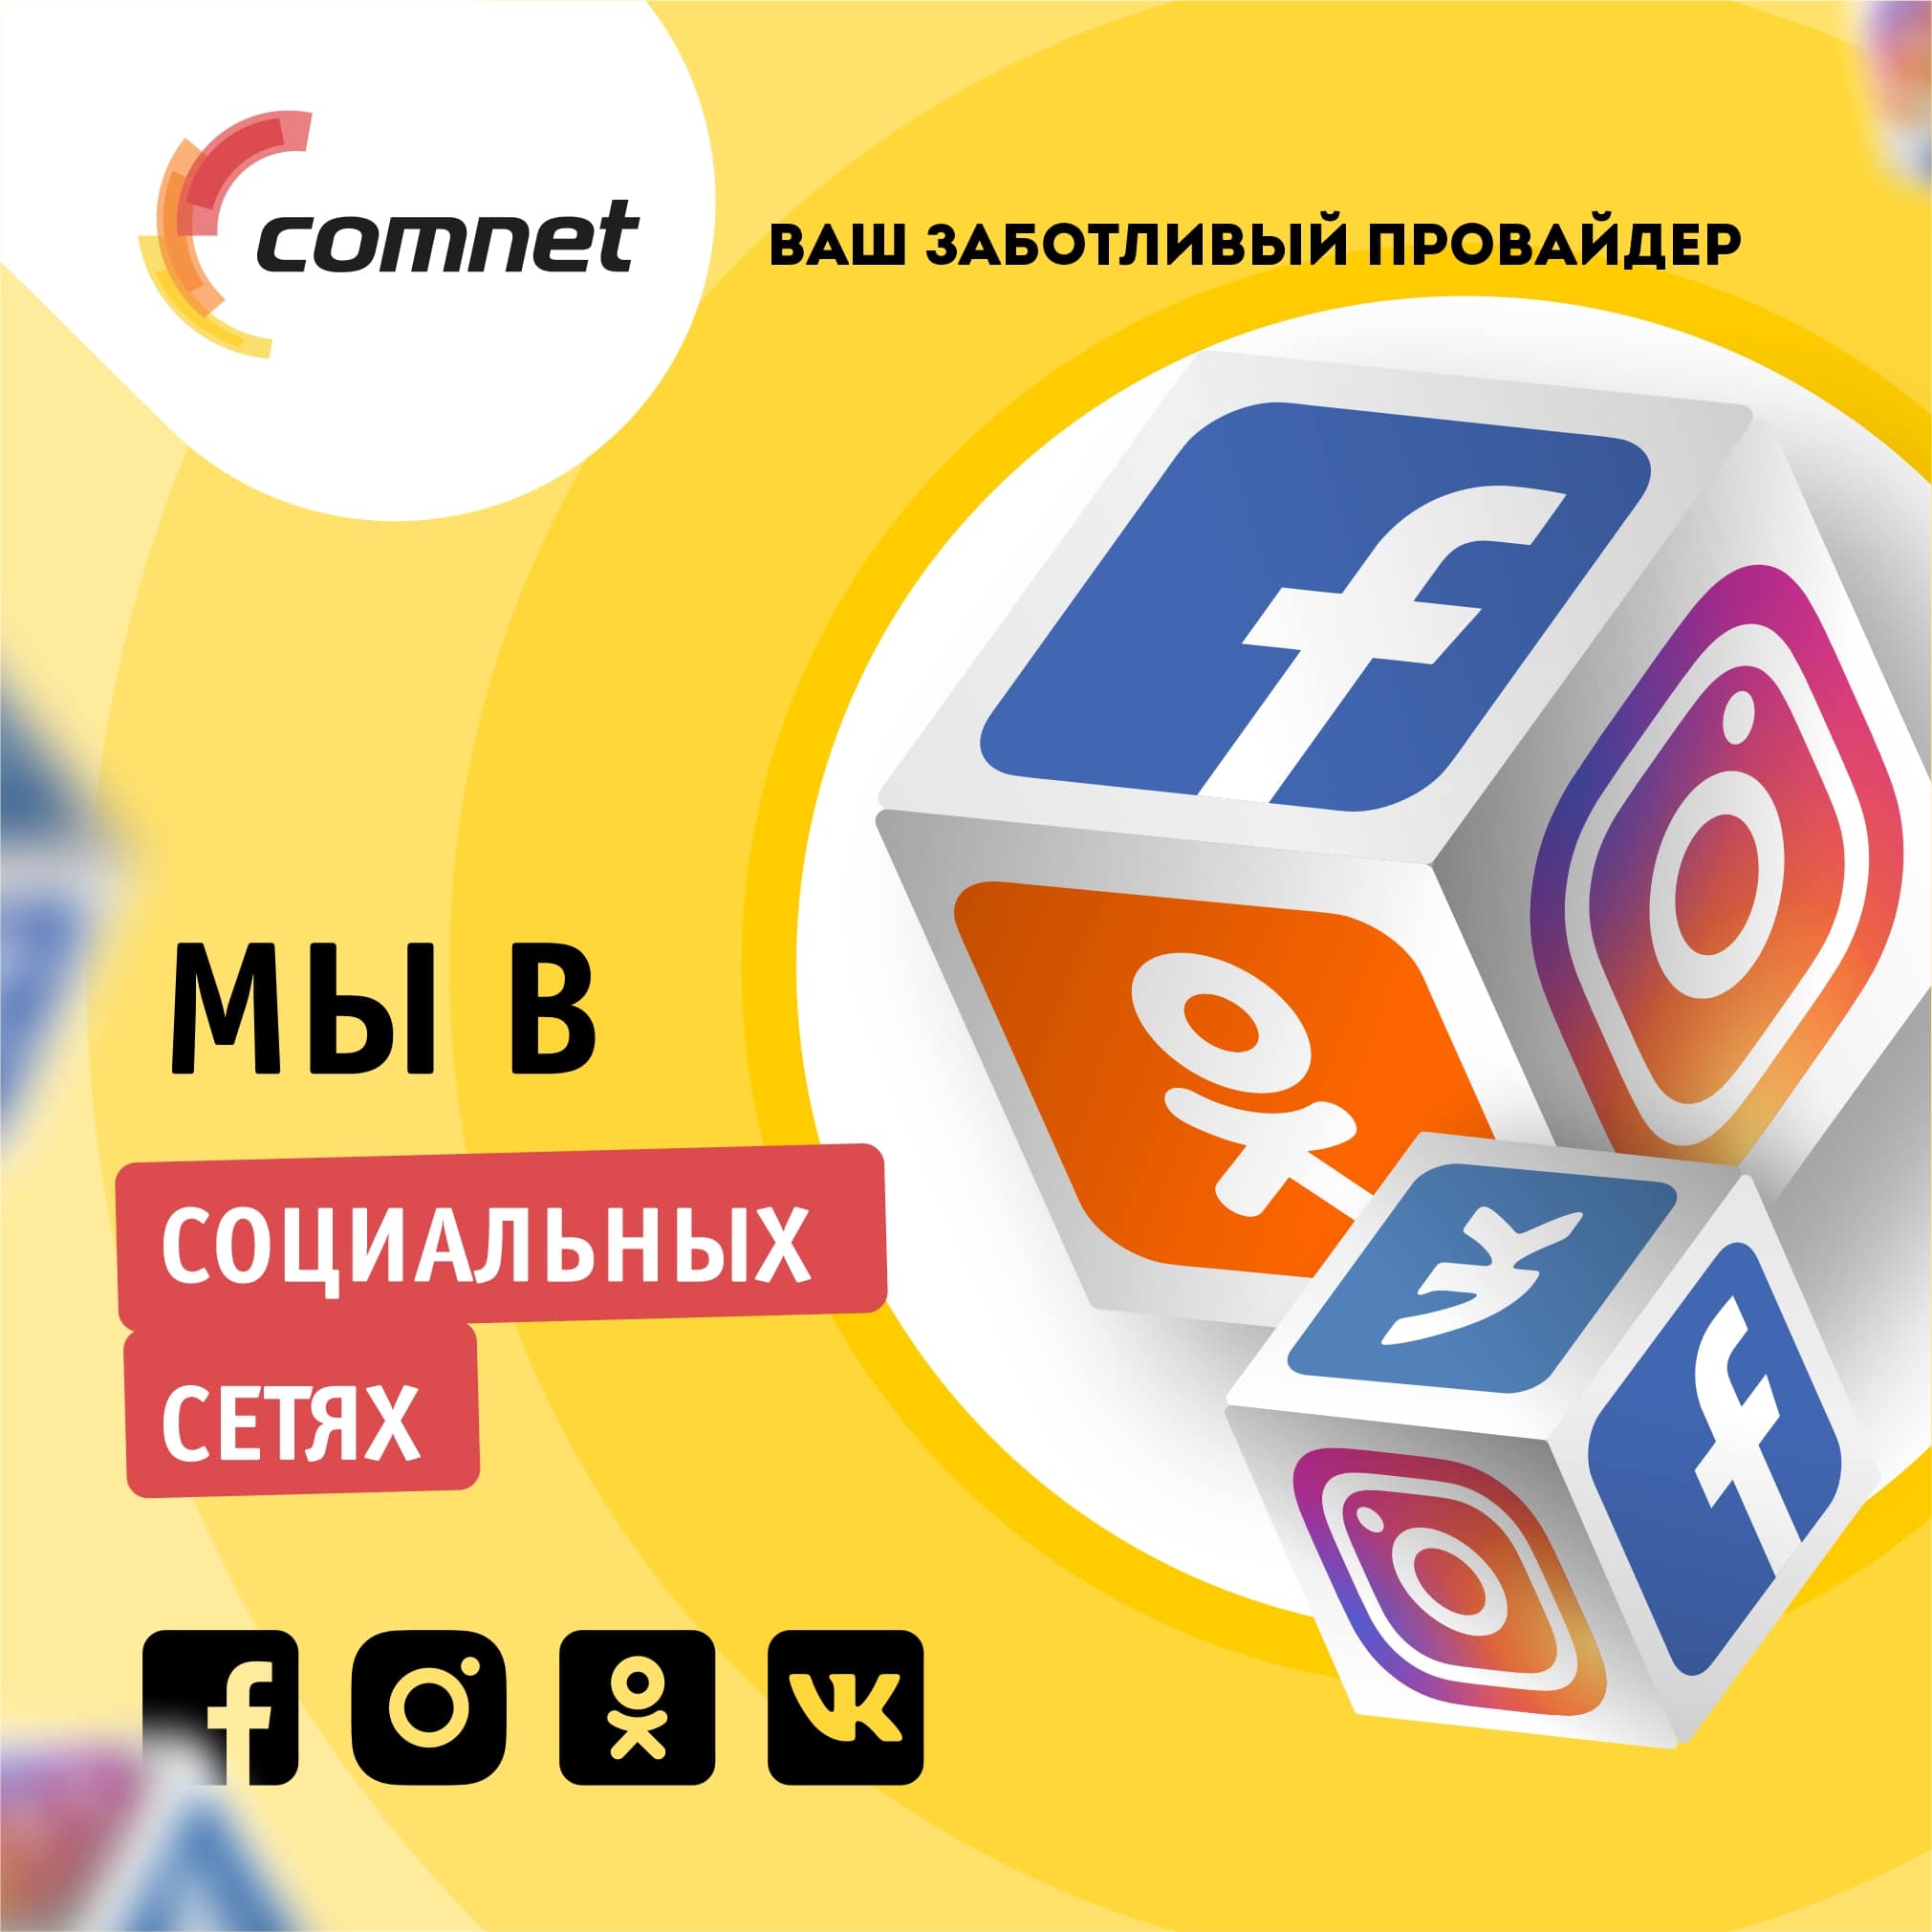 Comnet uz. COMNET uz logo. Комнет провайдер. COMNET WLFL LPTV Uzbek.